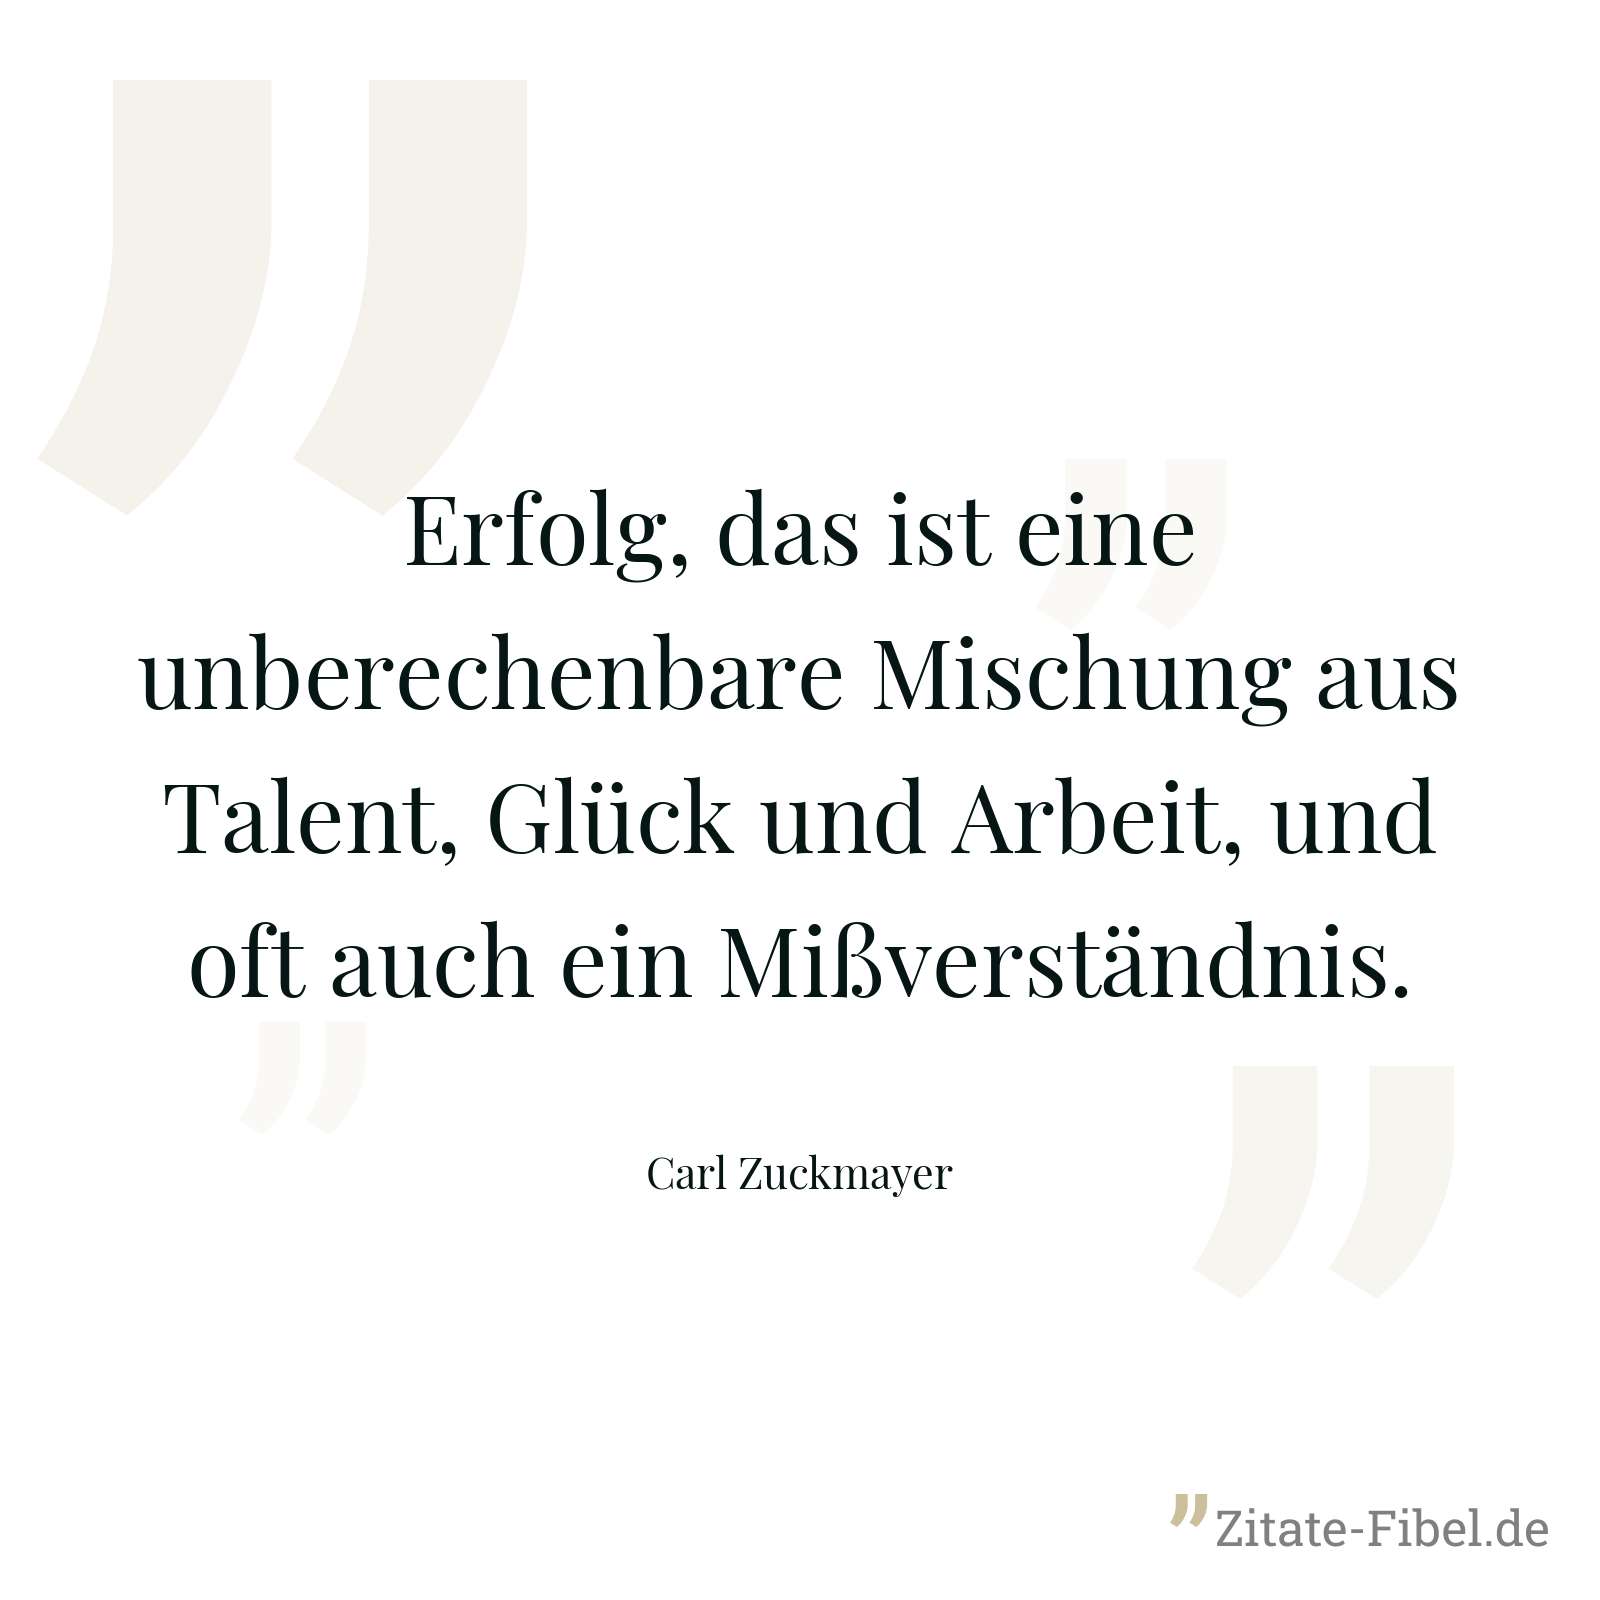 Erfolg, das ist eine unberechenbare Mischung aus Talent, Glück und Arbeit, und oft auch ein Mißverständnis. - Carl Zuckmayer